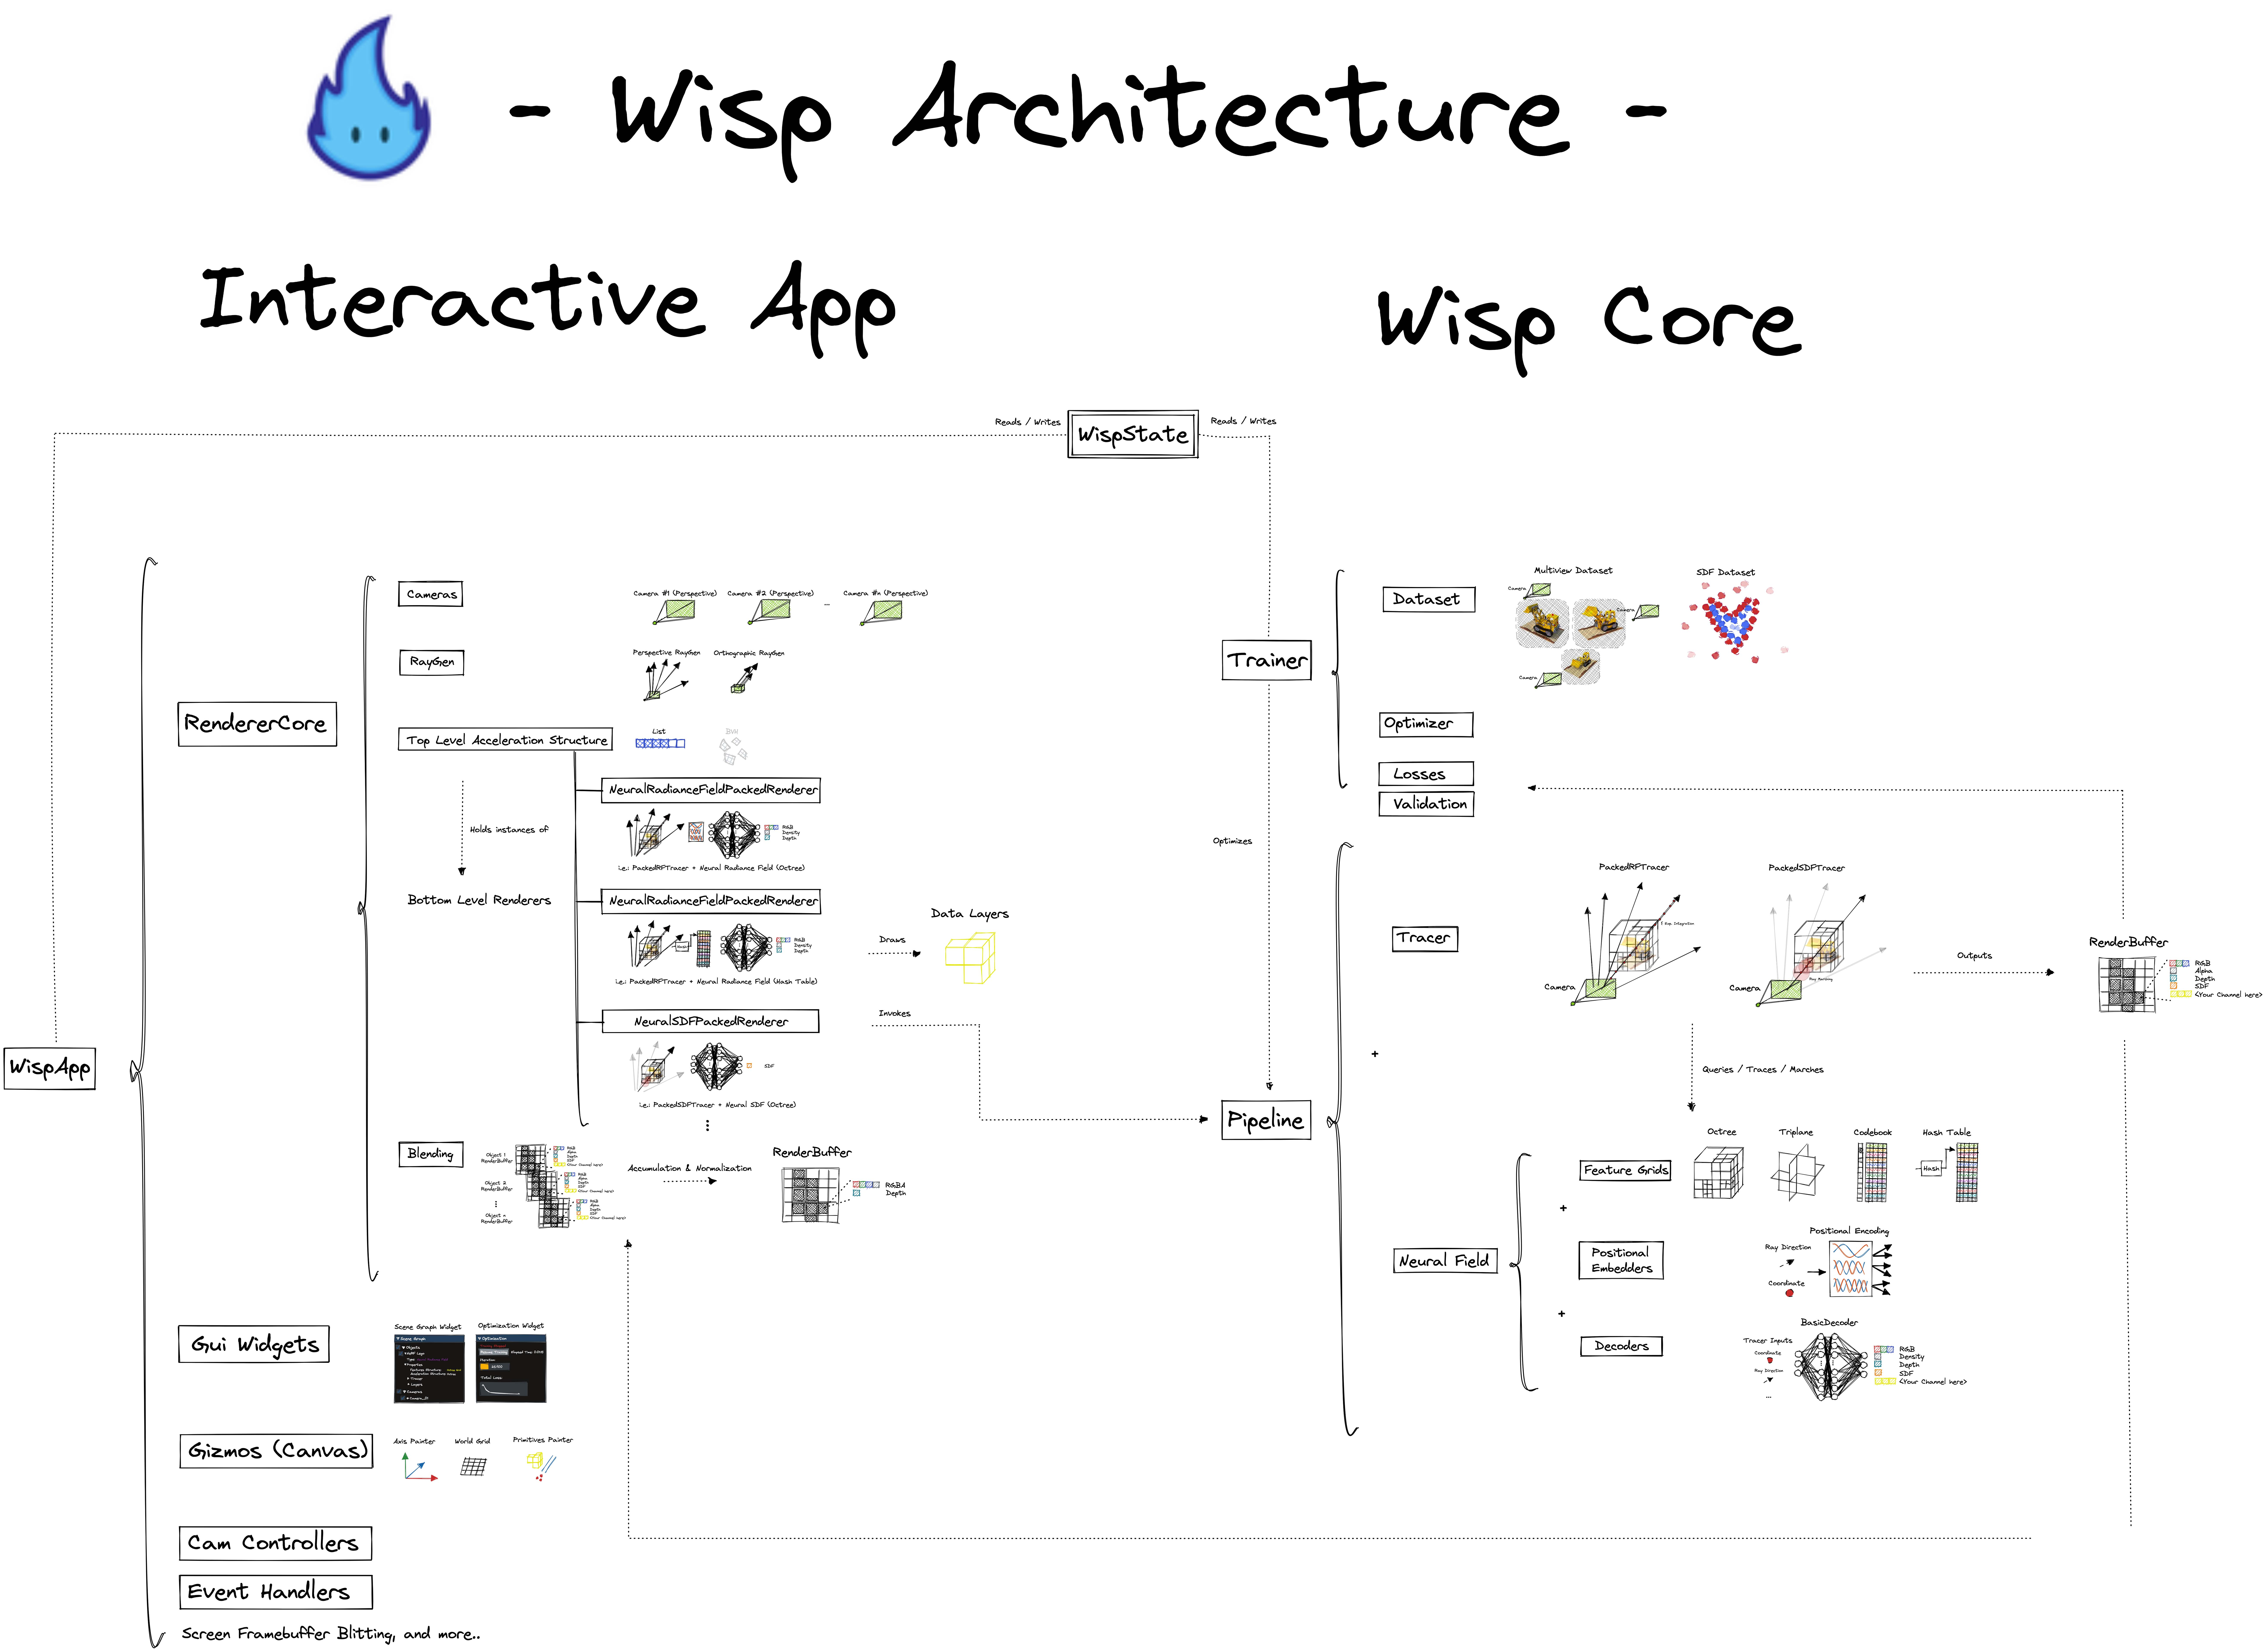 Wisp Architecture